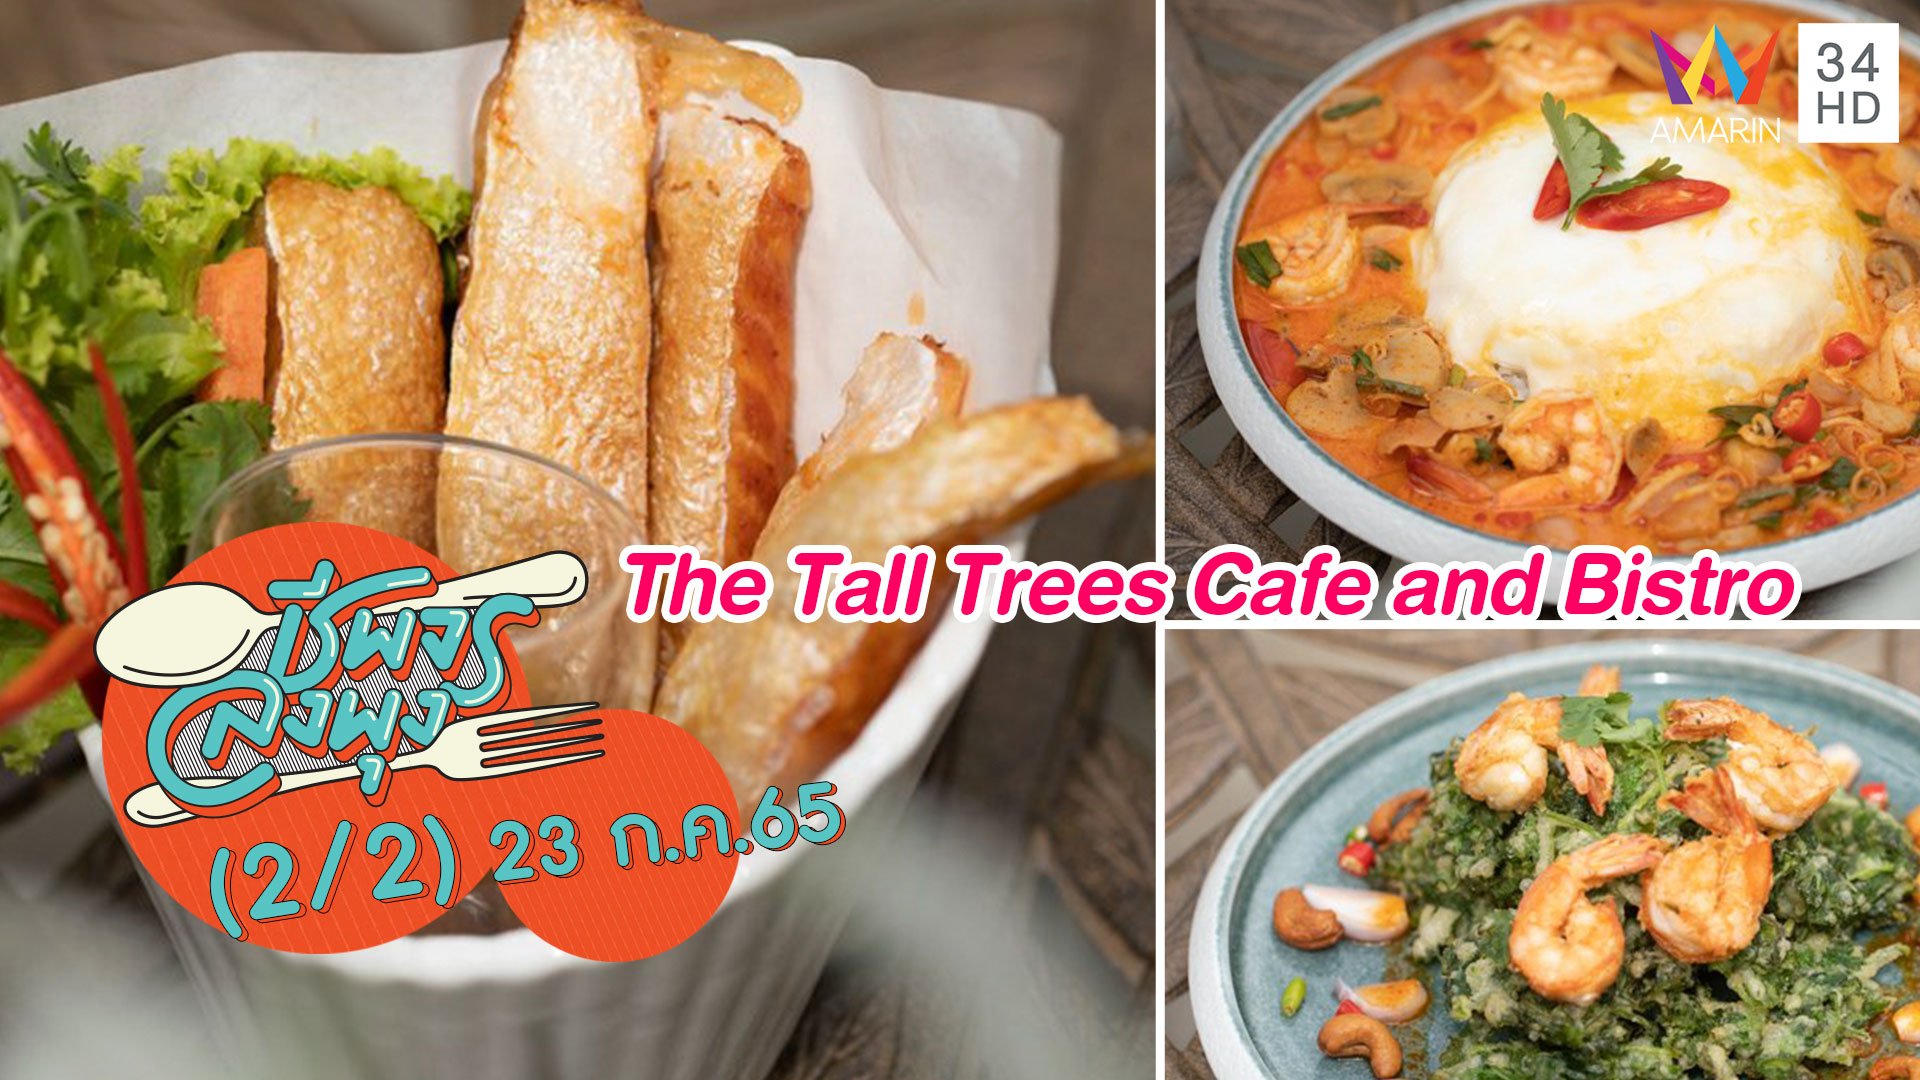 เอาใจสายสุขภาพ @ร้าน The Tall Trees Cafe and Bistro | ชีพจรลงพุง | 23 ก.ค. 65 (2/2) | AMARIN TVHD34